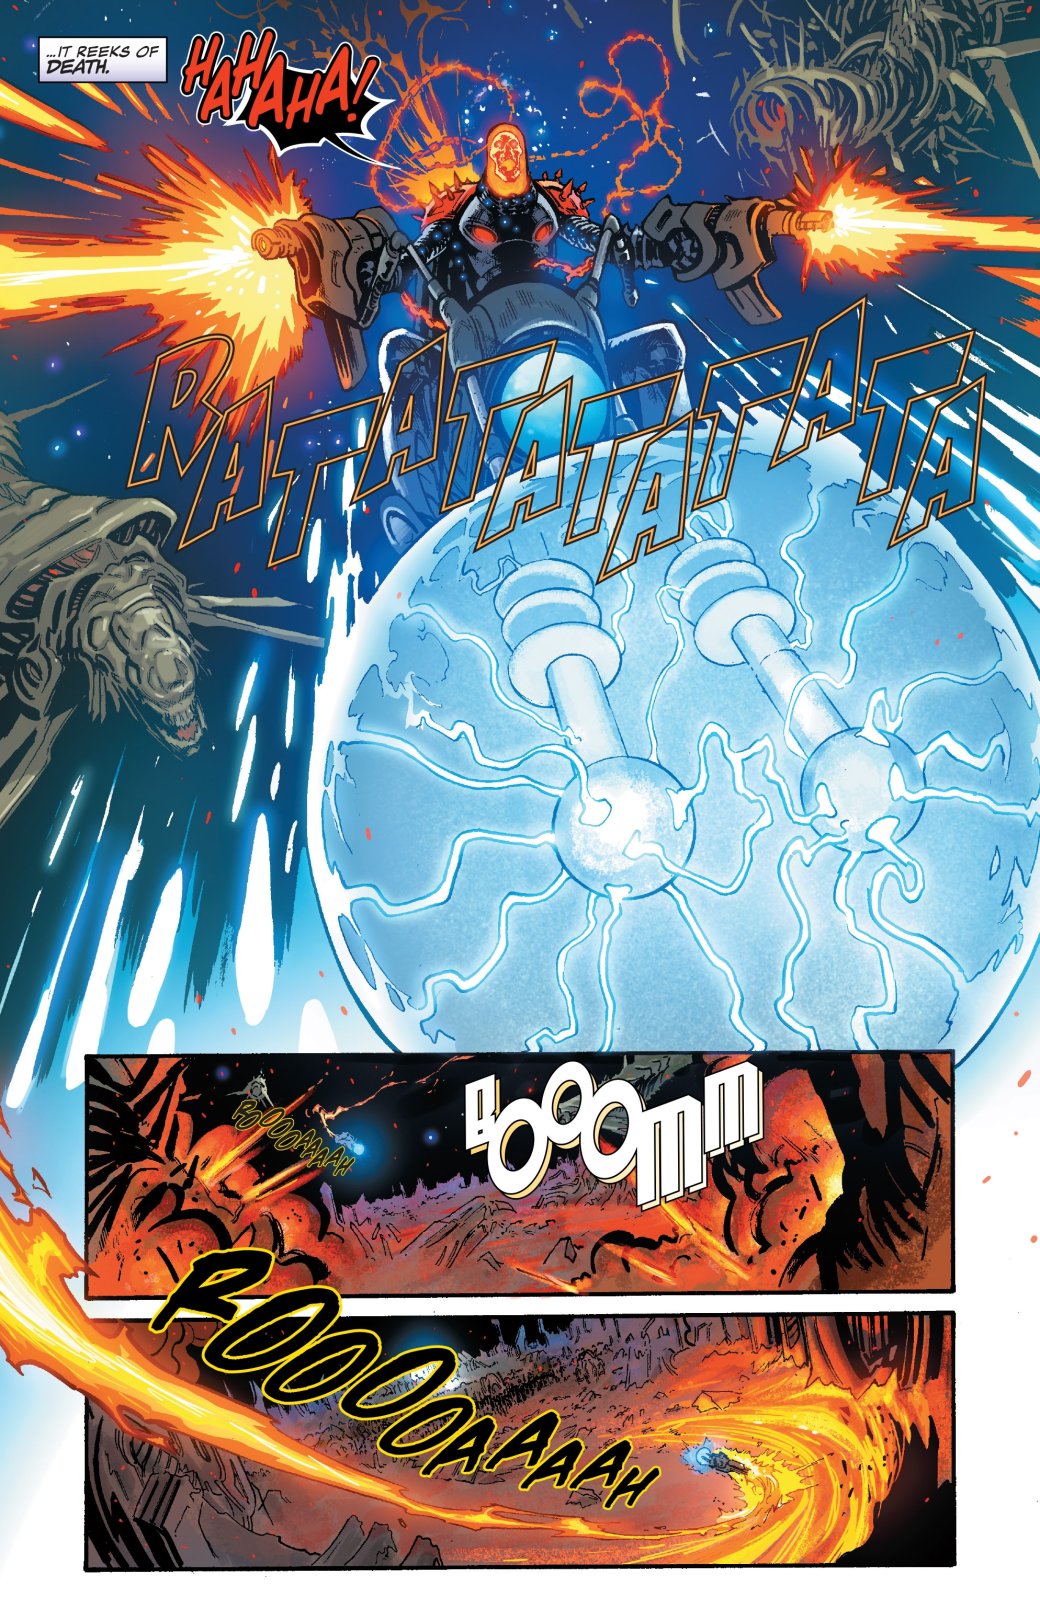 В комиксе про Таноса появился Призрачный гонщик из будущего, и, похоже, мы знаем кто он. - Изображение 1